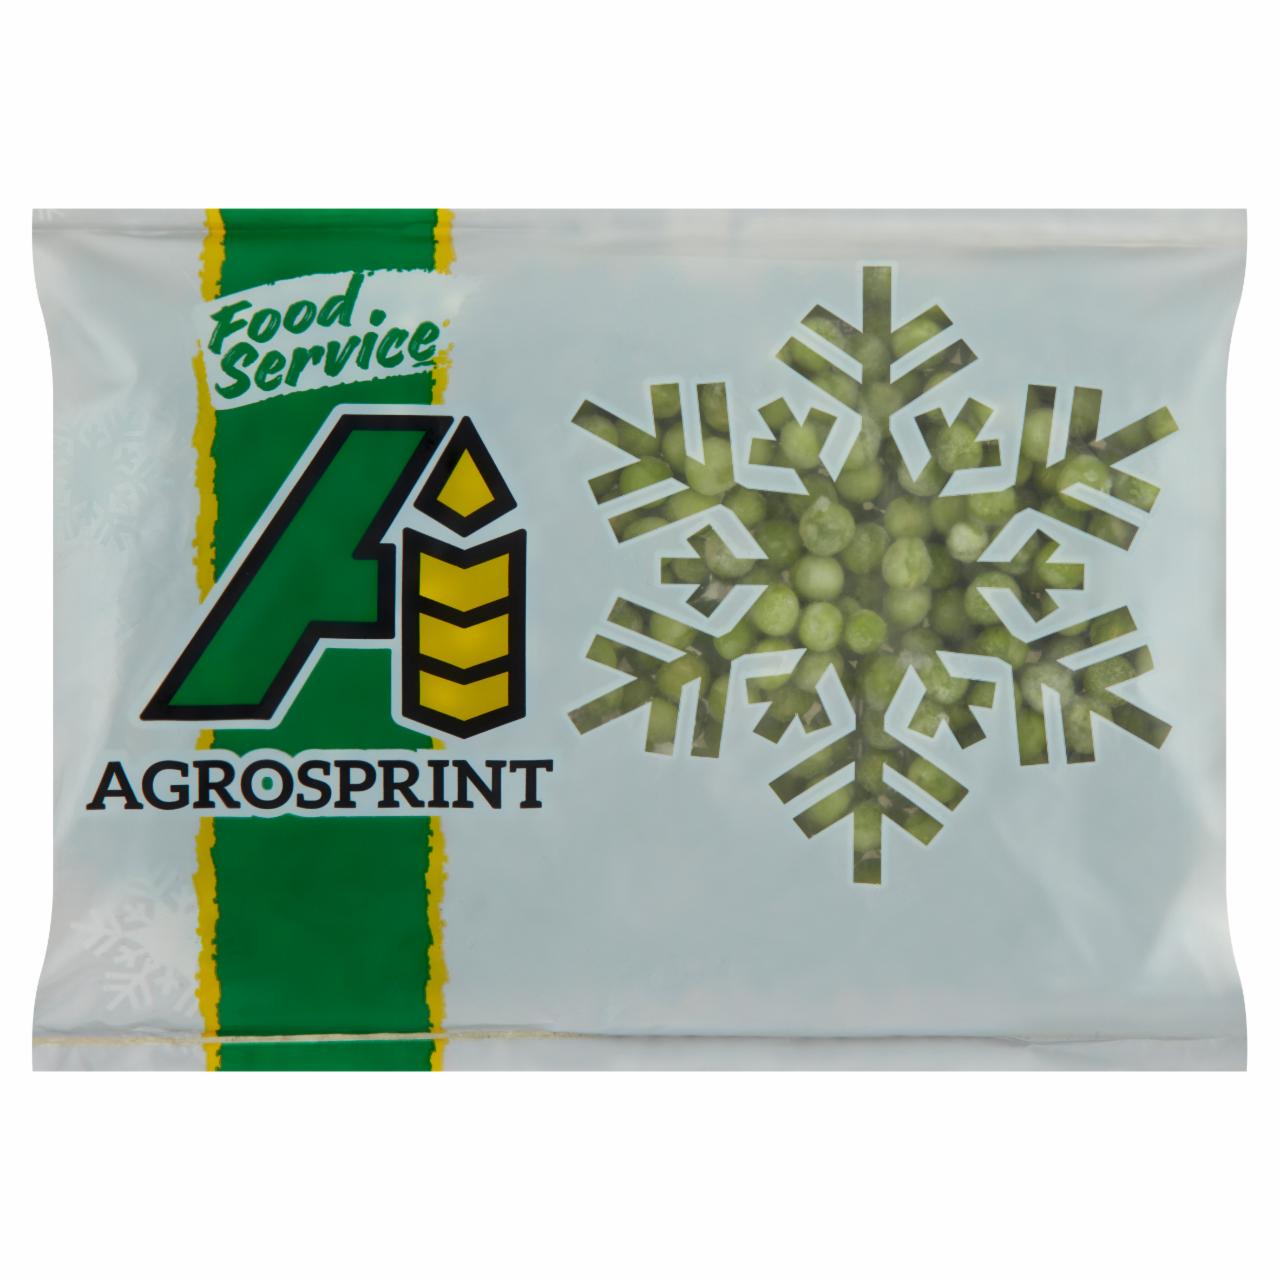 Képek - AgroSprint gyorsfagyasztott zsenge zöldborsó 200 g